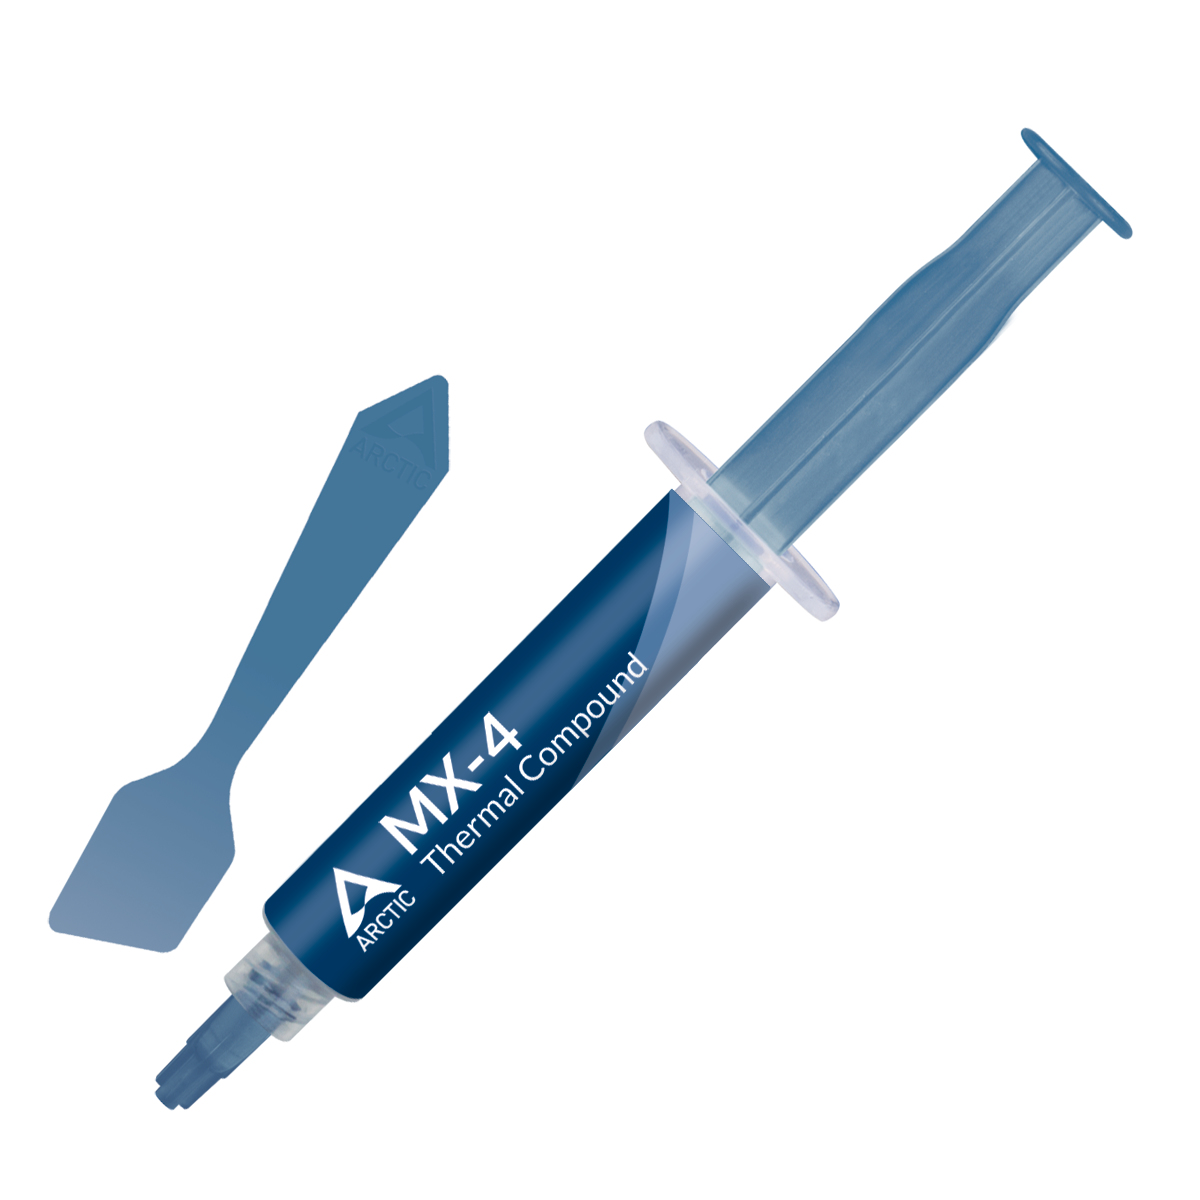 Arctic MX-4 High Performance Wärmeleitpaste - Wärmeleitpaste - 2,5 g/cm³ - Blau - 8 g - 128 mm - 17,3 mm